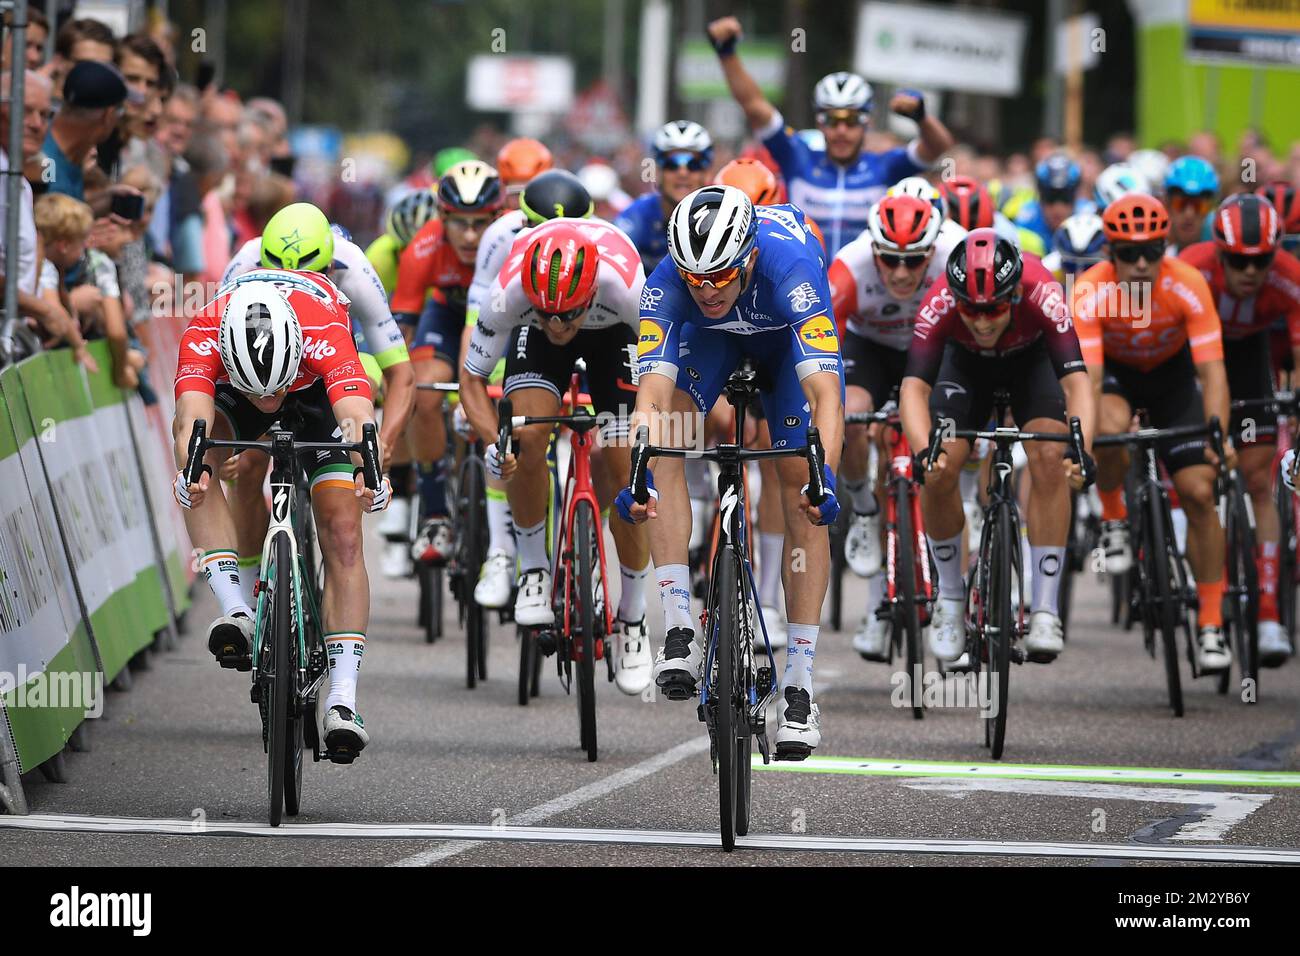 L'illustration montre le sprint lors de la quatrième étape de la course  cycliste 'Binckbank Tour', de Riemst, Belgique à Venray, pays-Bas (191,4  km), vendredi 16 août 2019. BELGA PHOTO DAVID STOCKMAN Photo